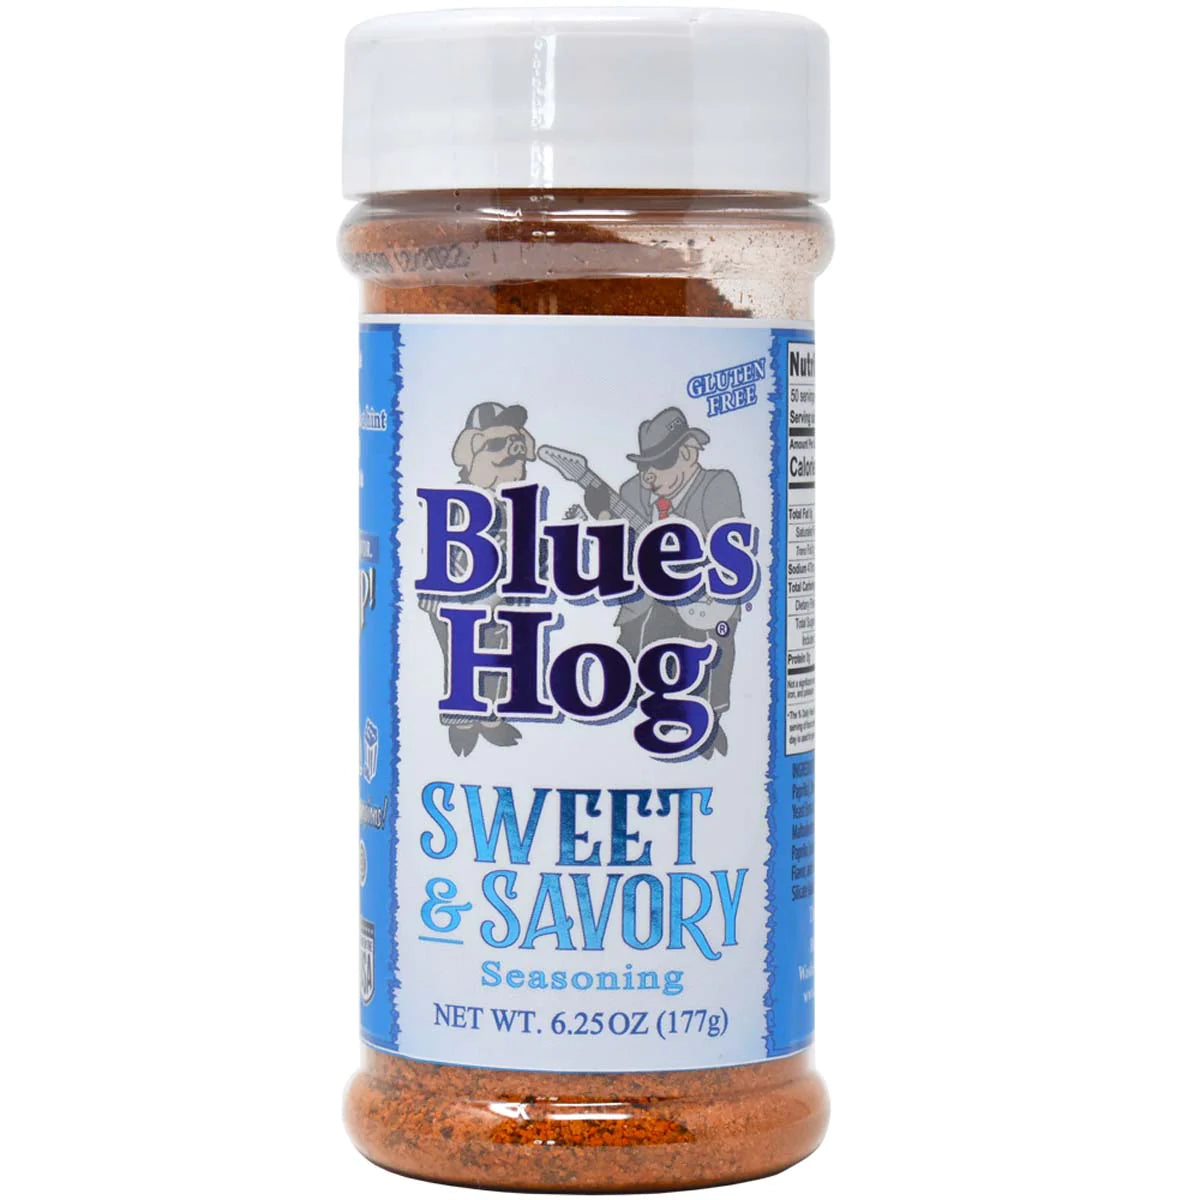 BLUE'S HOG Sweet & Savory Seasoning